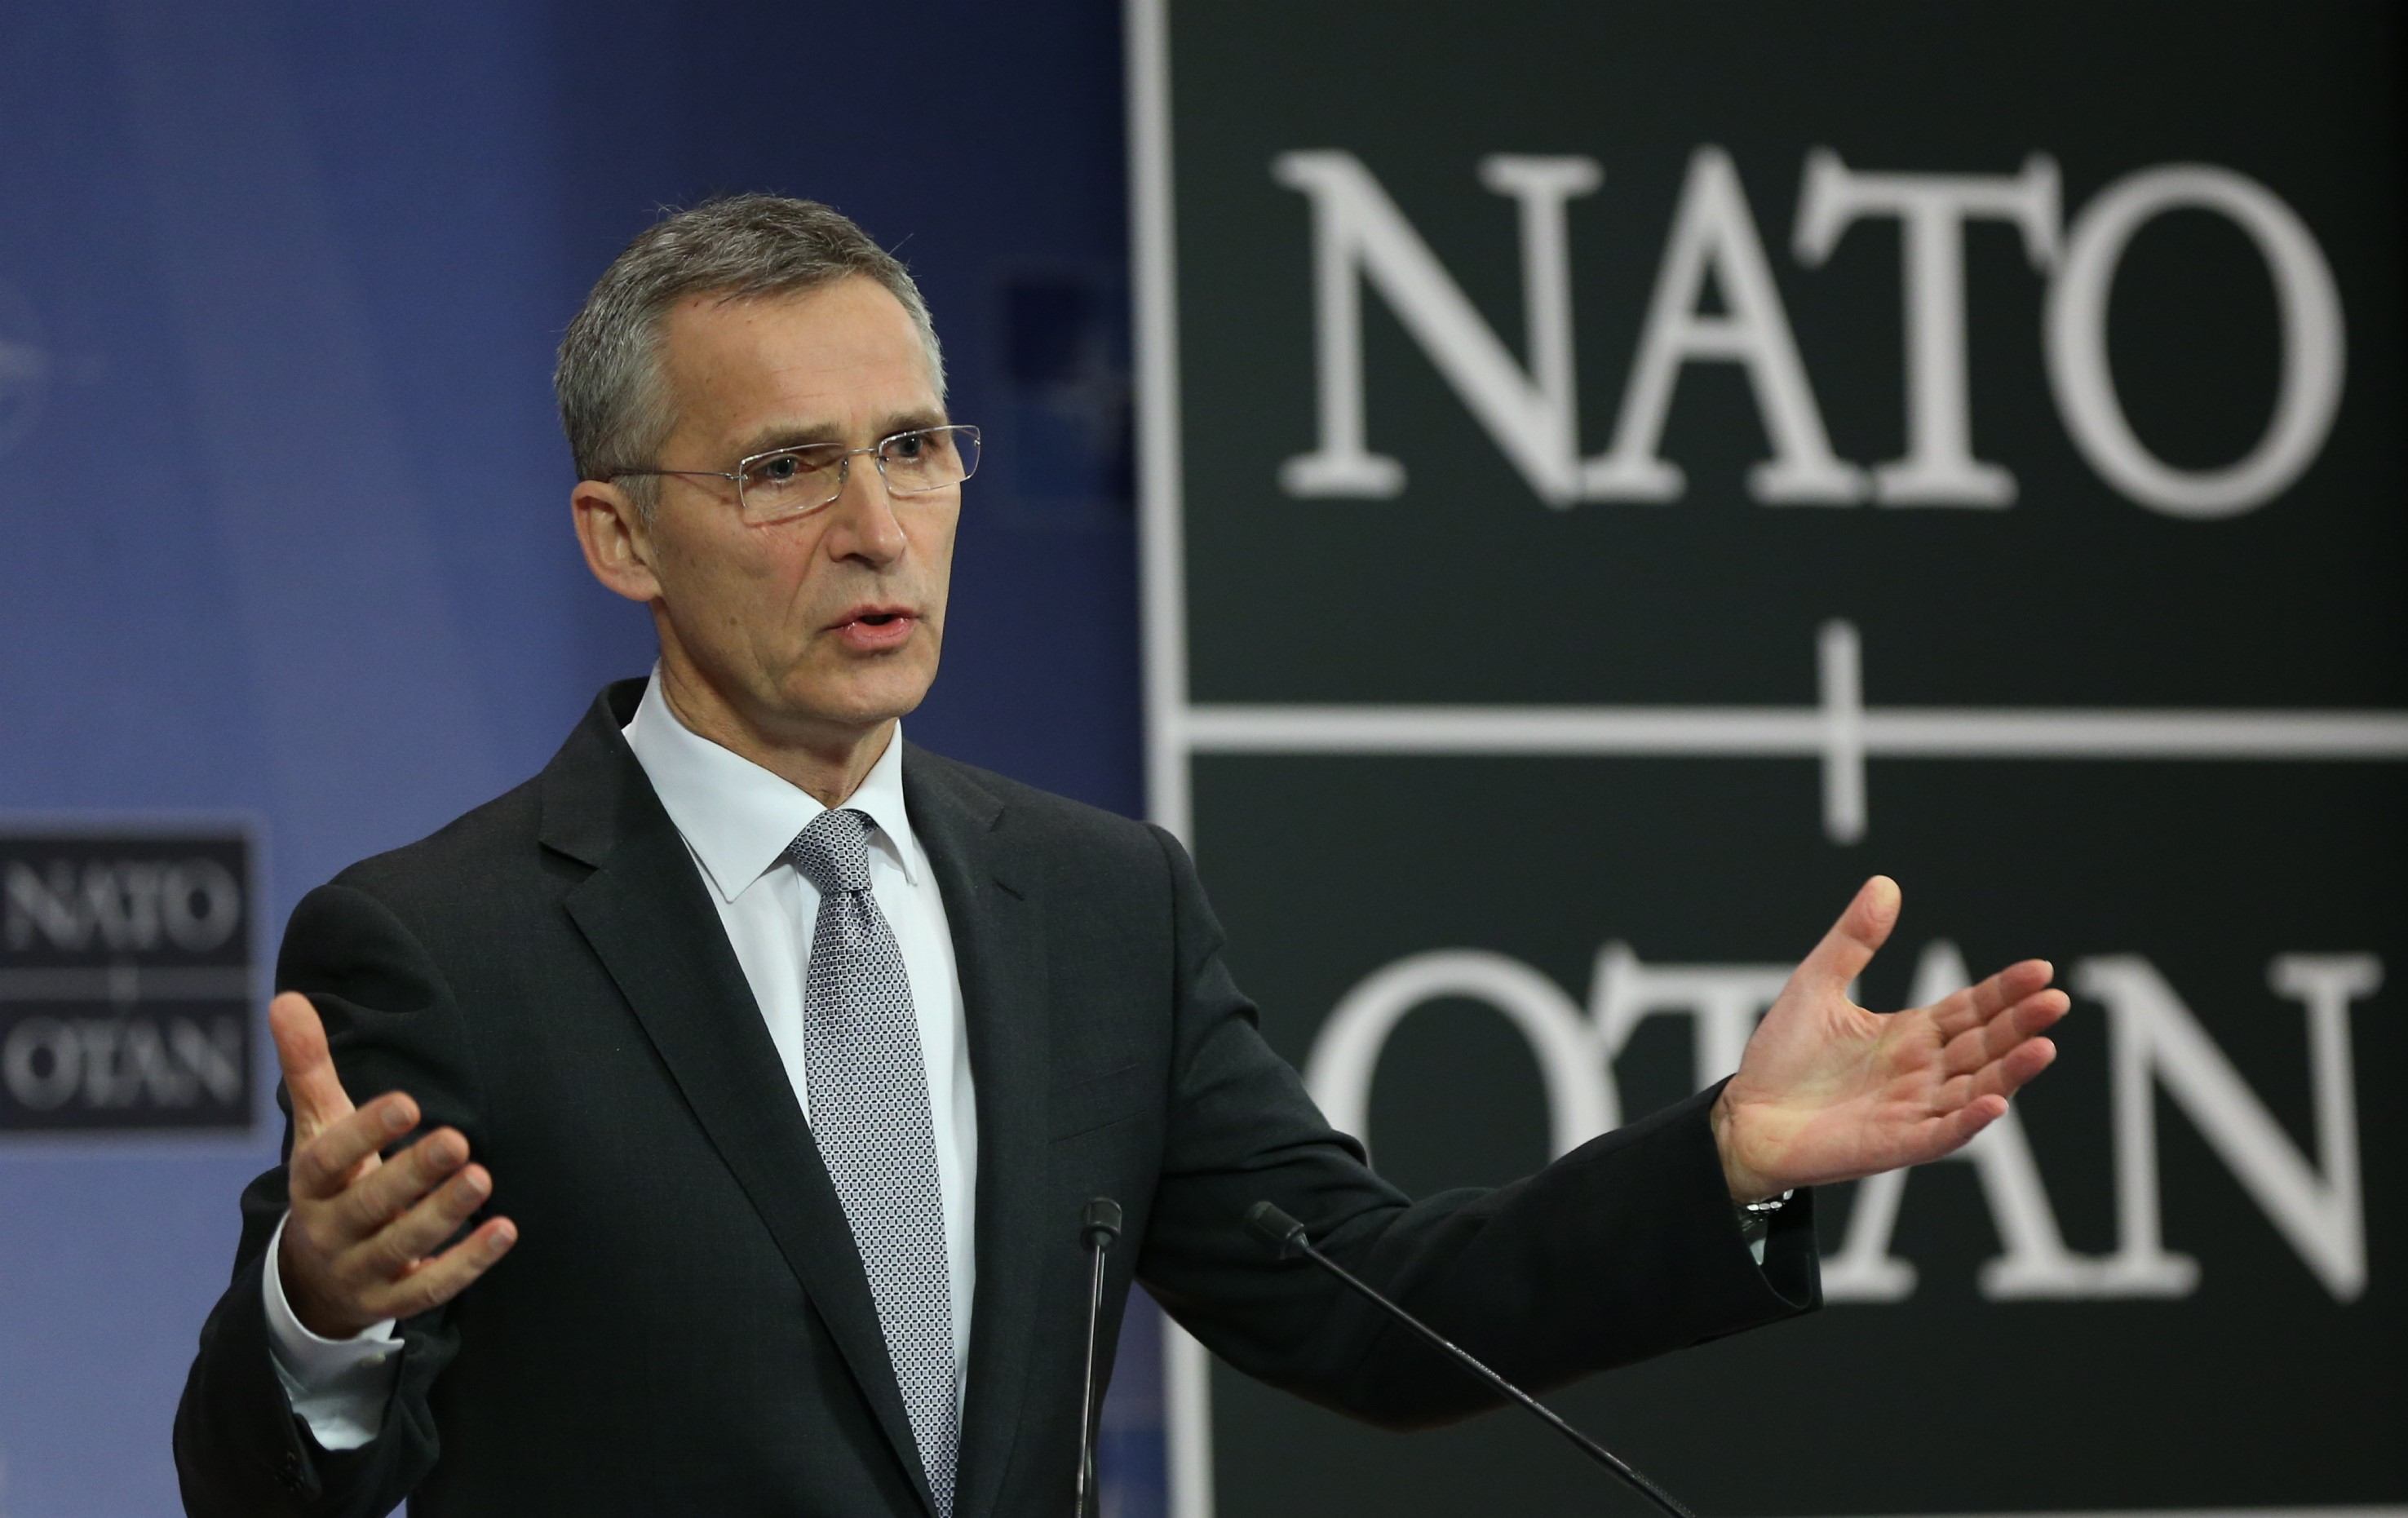 Jens Stoltenberg dă asiguări: NATO a analizat principalele provocări şi vrea intensificarea cooperării cu partenerii